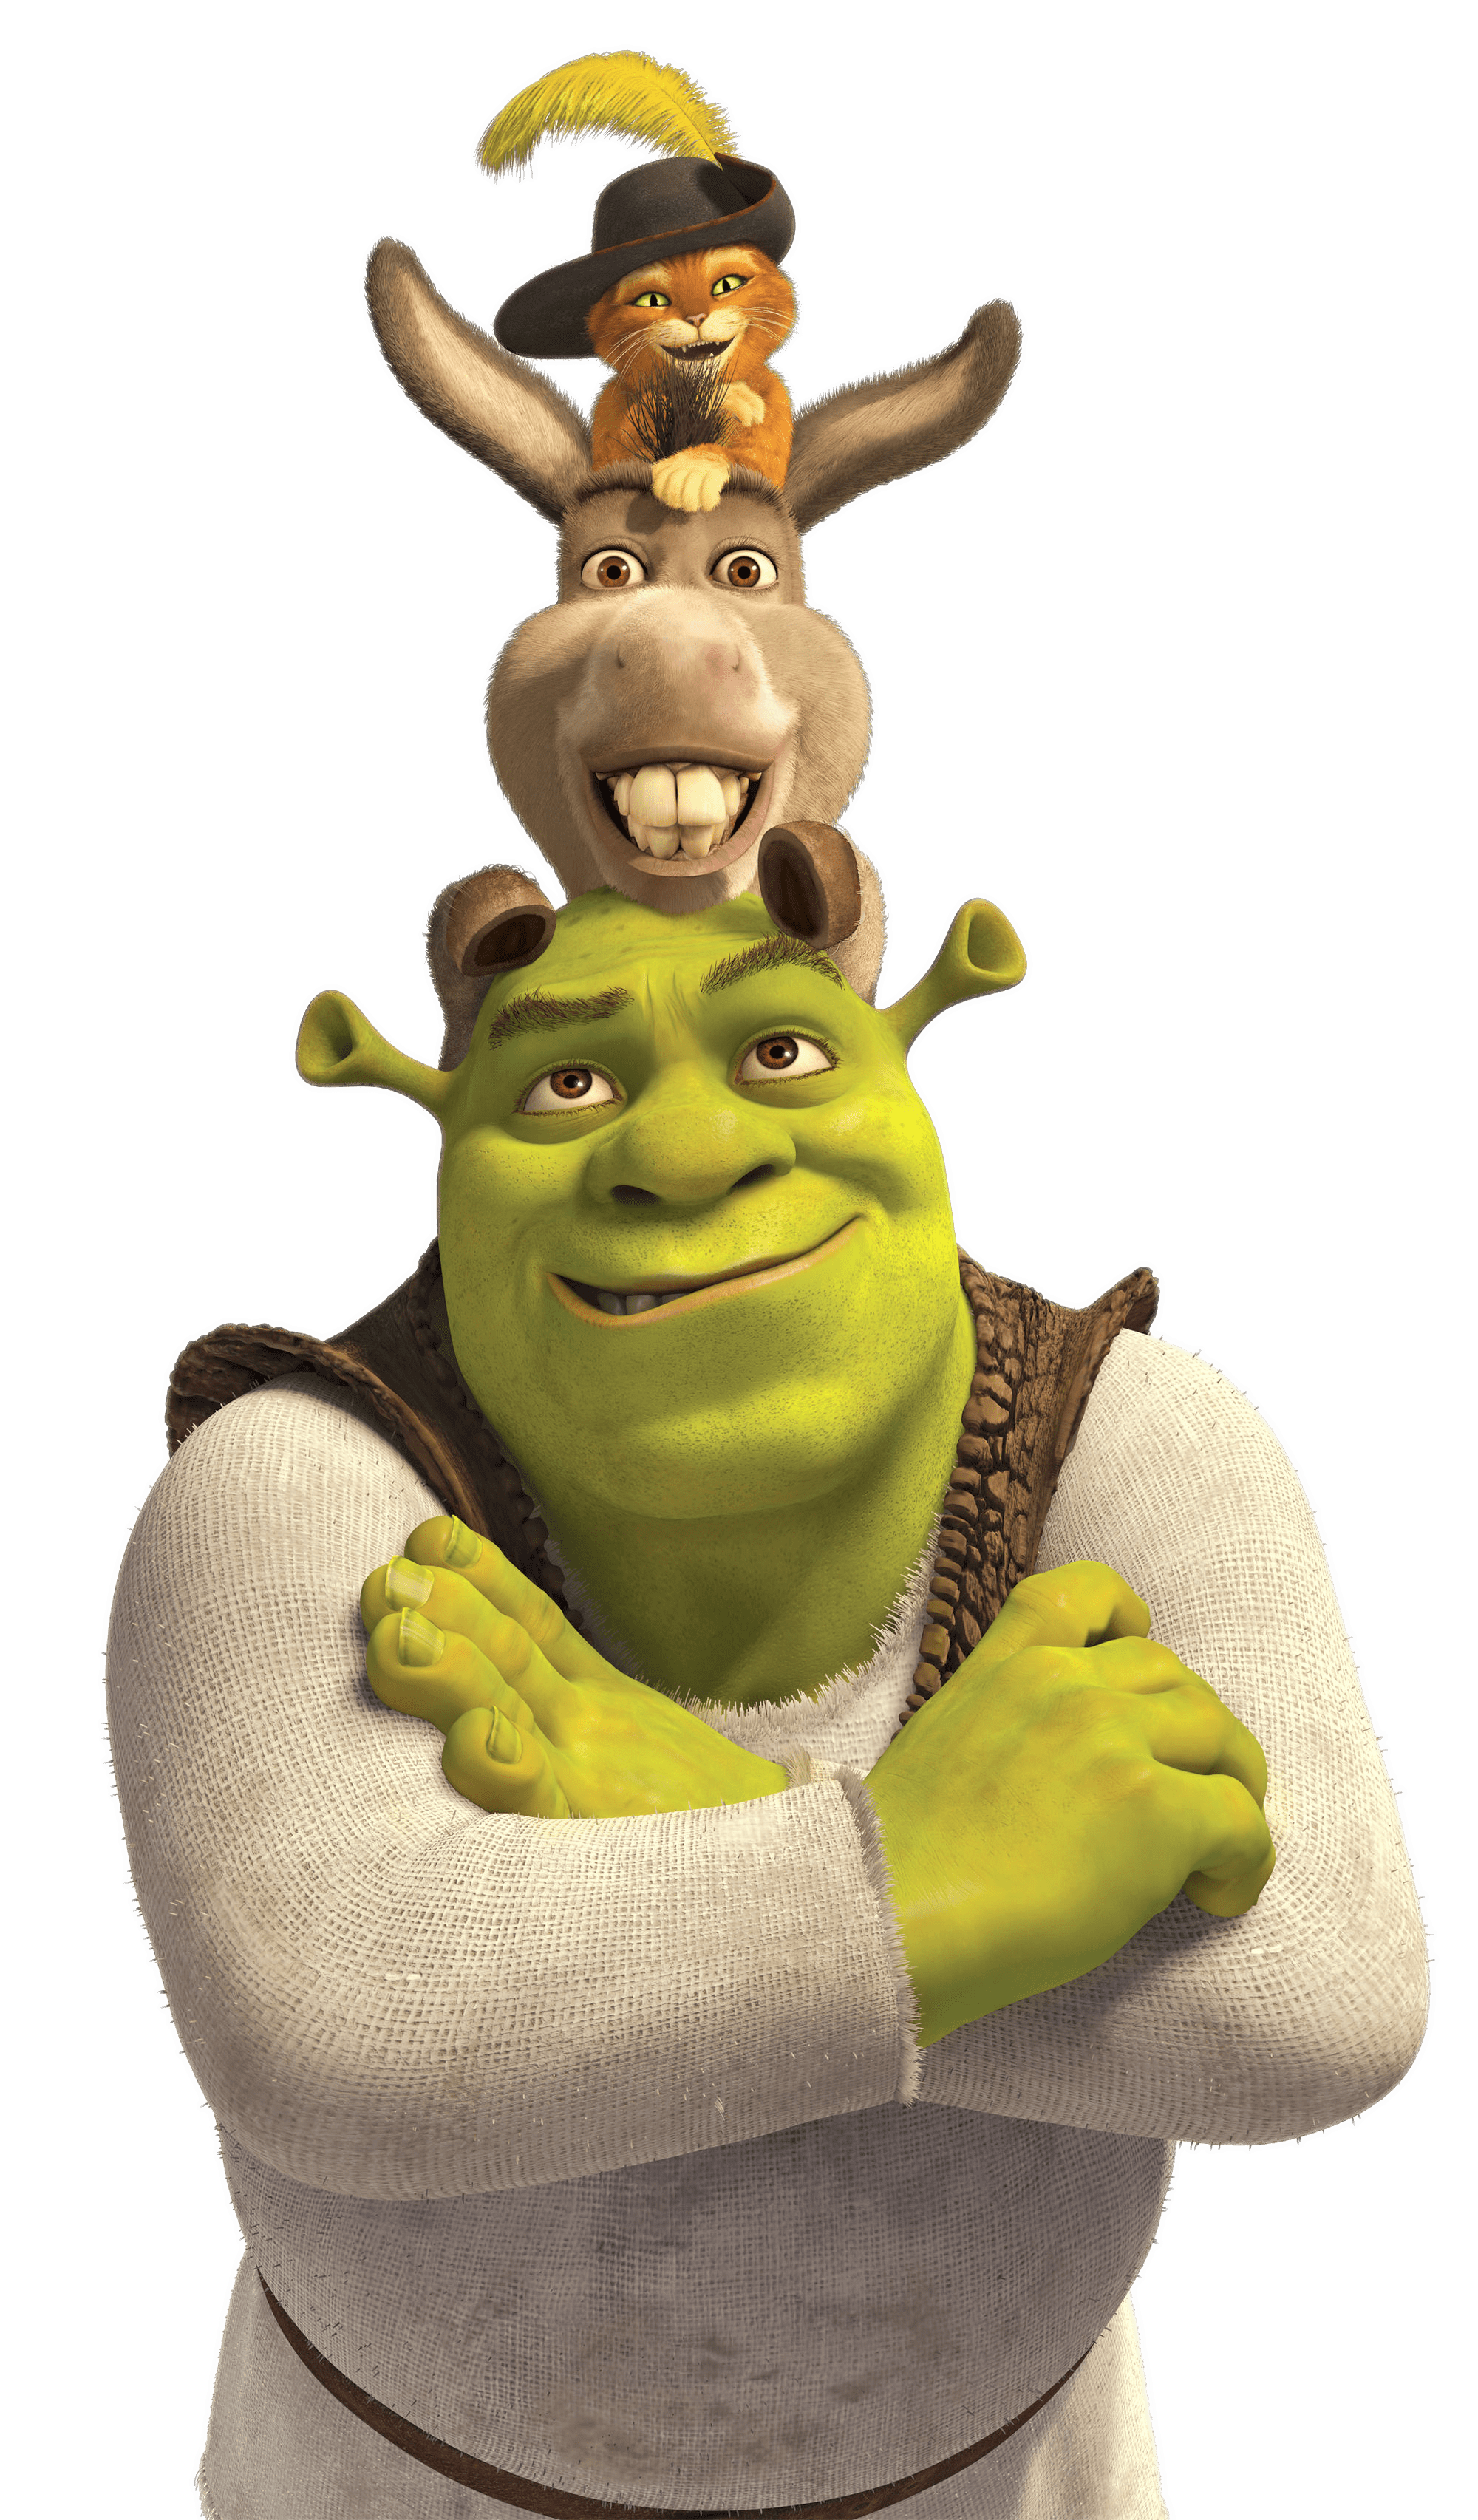 Shrek PNG Image in High Definition pngteam.com